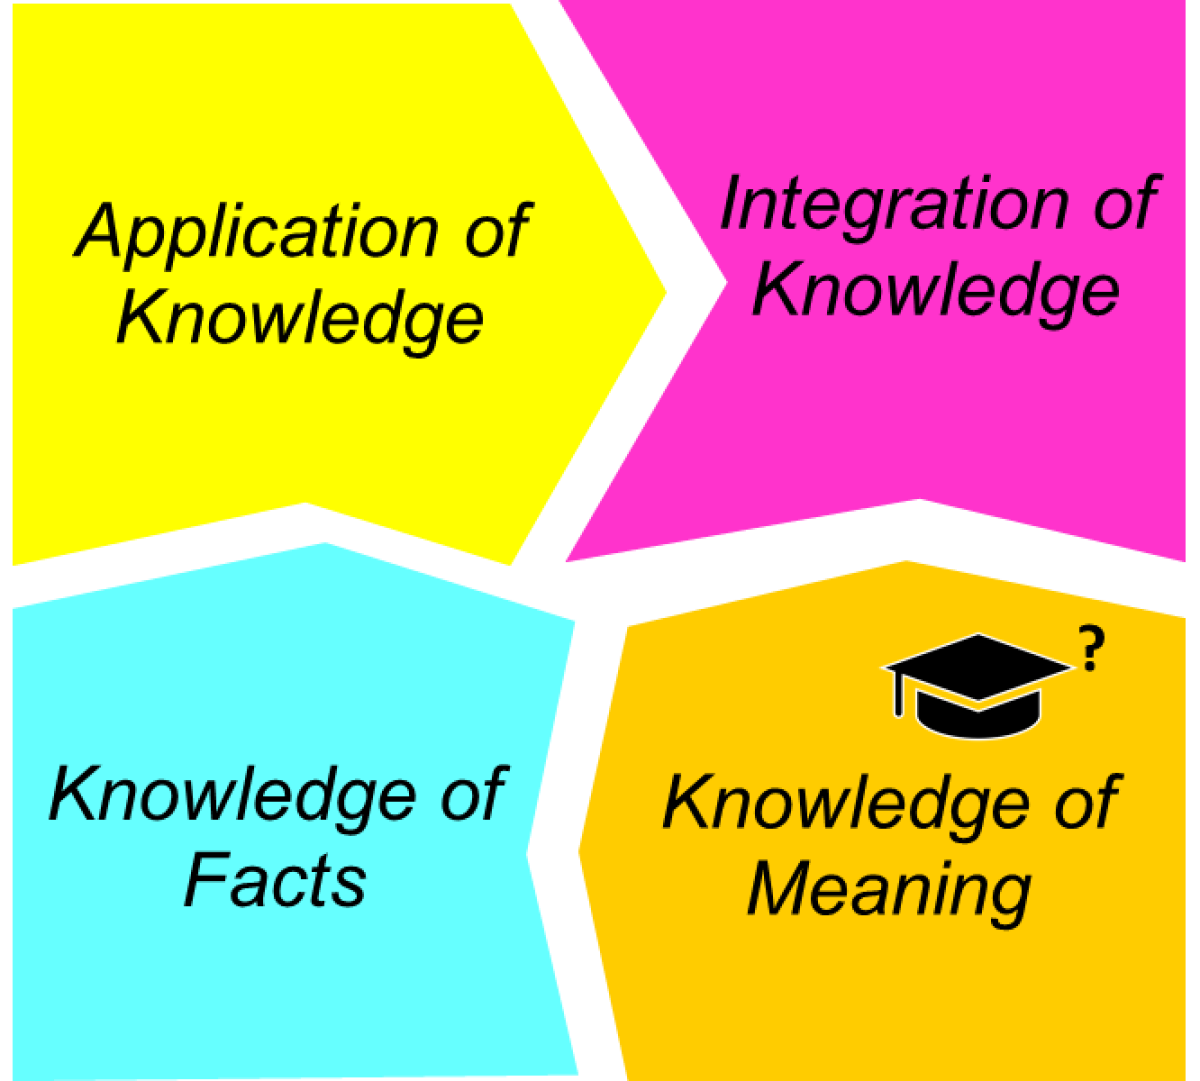 Types of Knowledge (Hailikari et al., 2007)